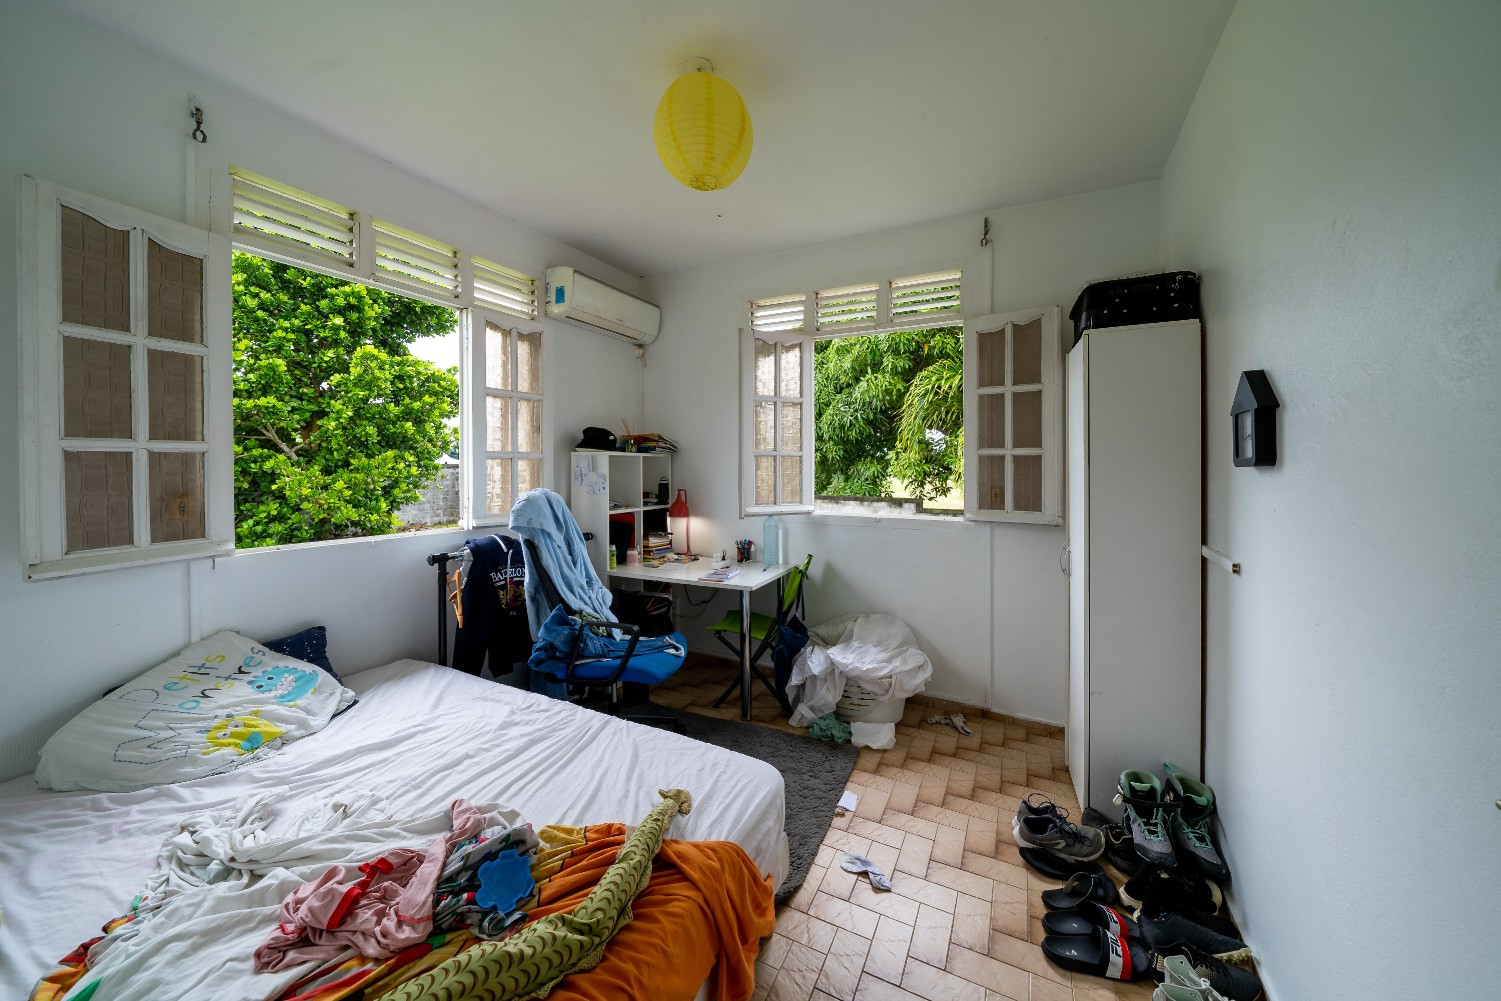 
                                                Vente
                                                 Maison avec piscine - 182 m² - Lamentin Guadeloupe